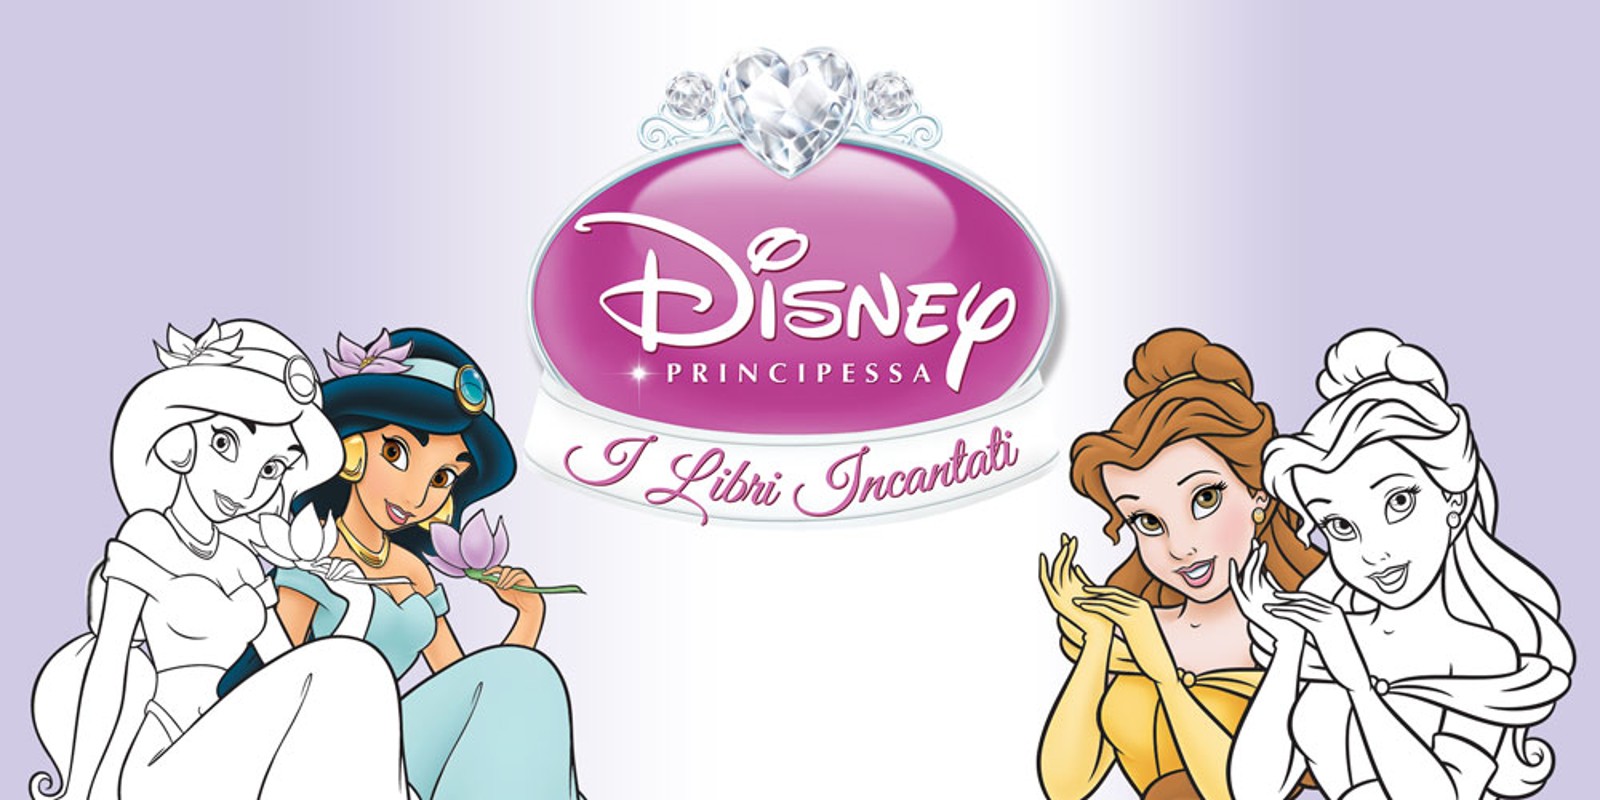 Disney Principessa: I Libri Incantati, Wii, Giochi